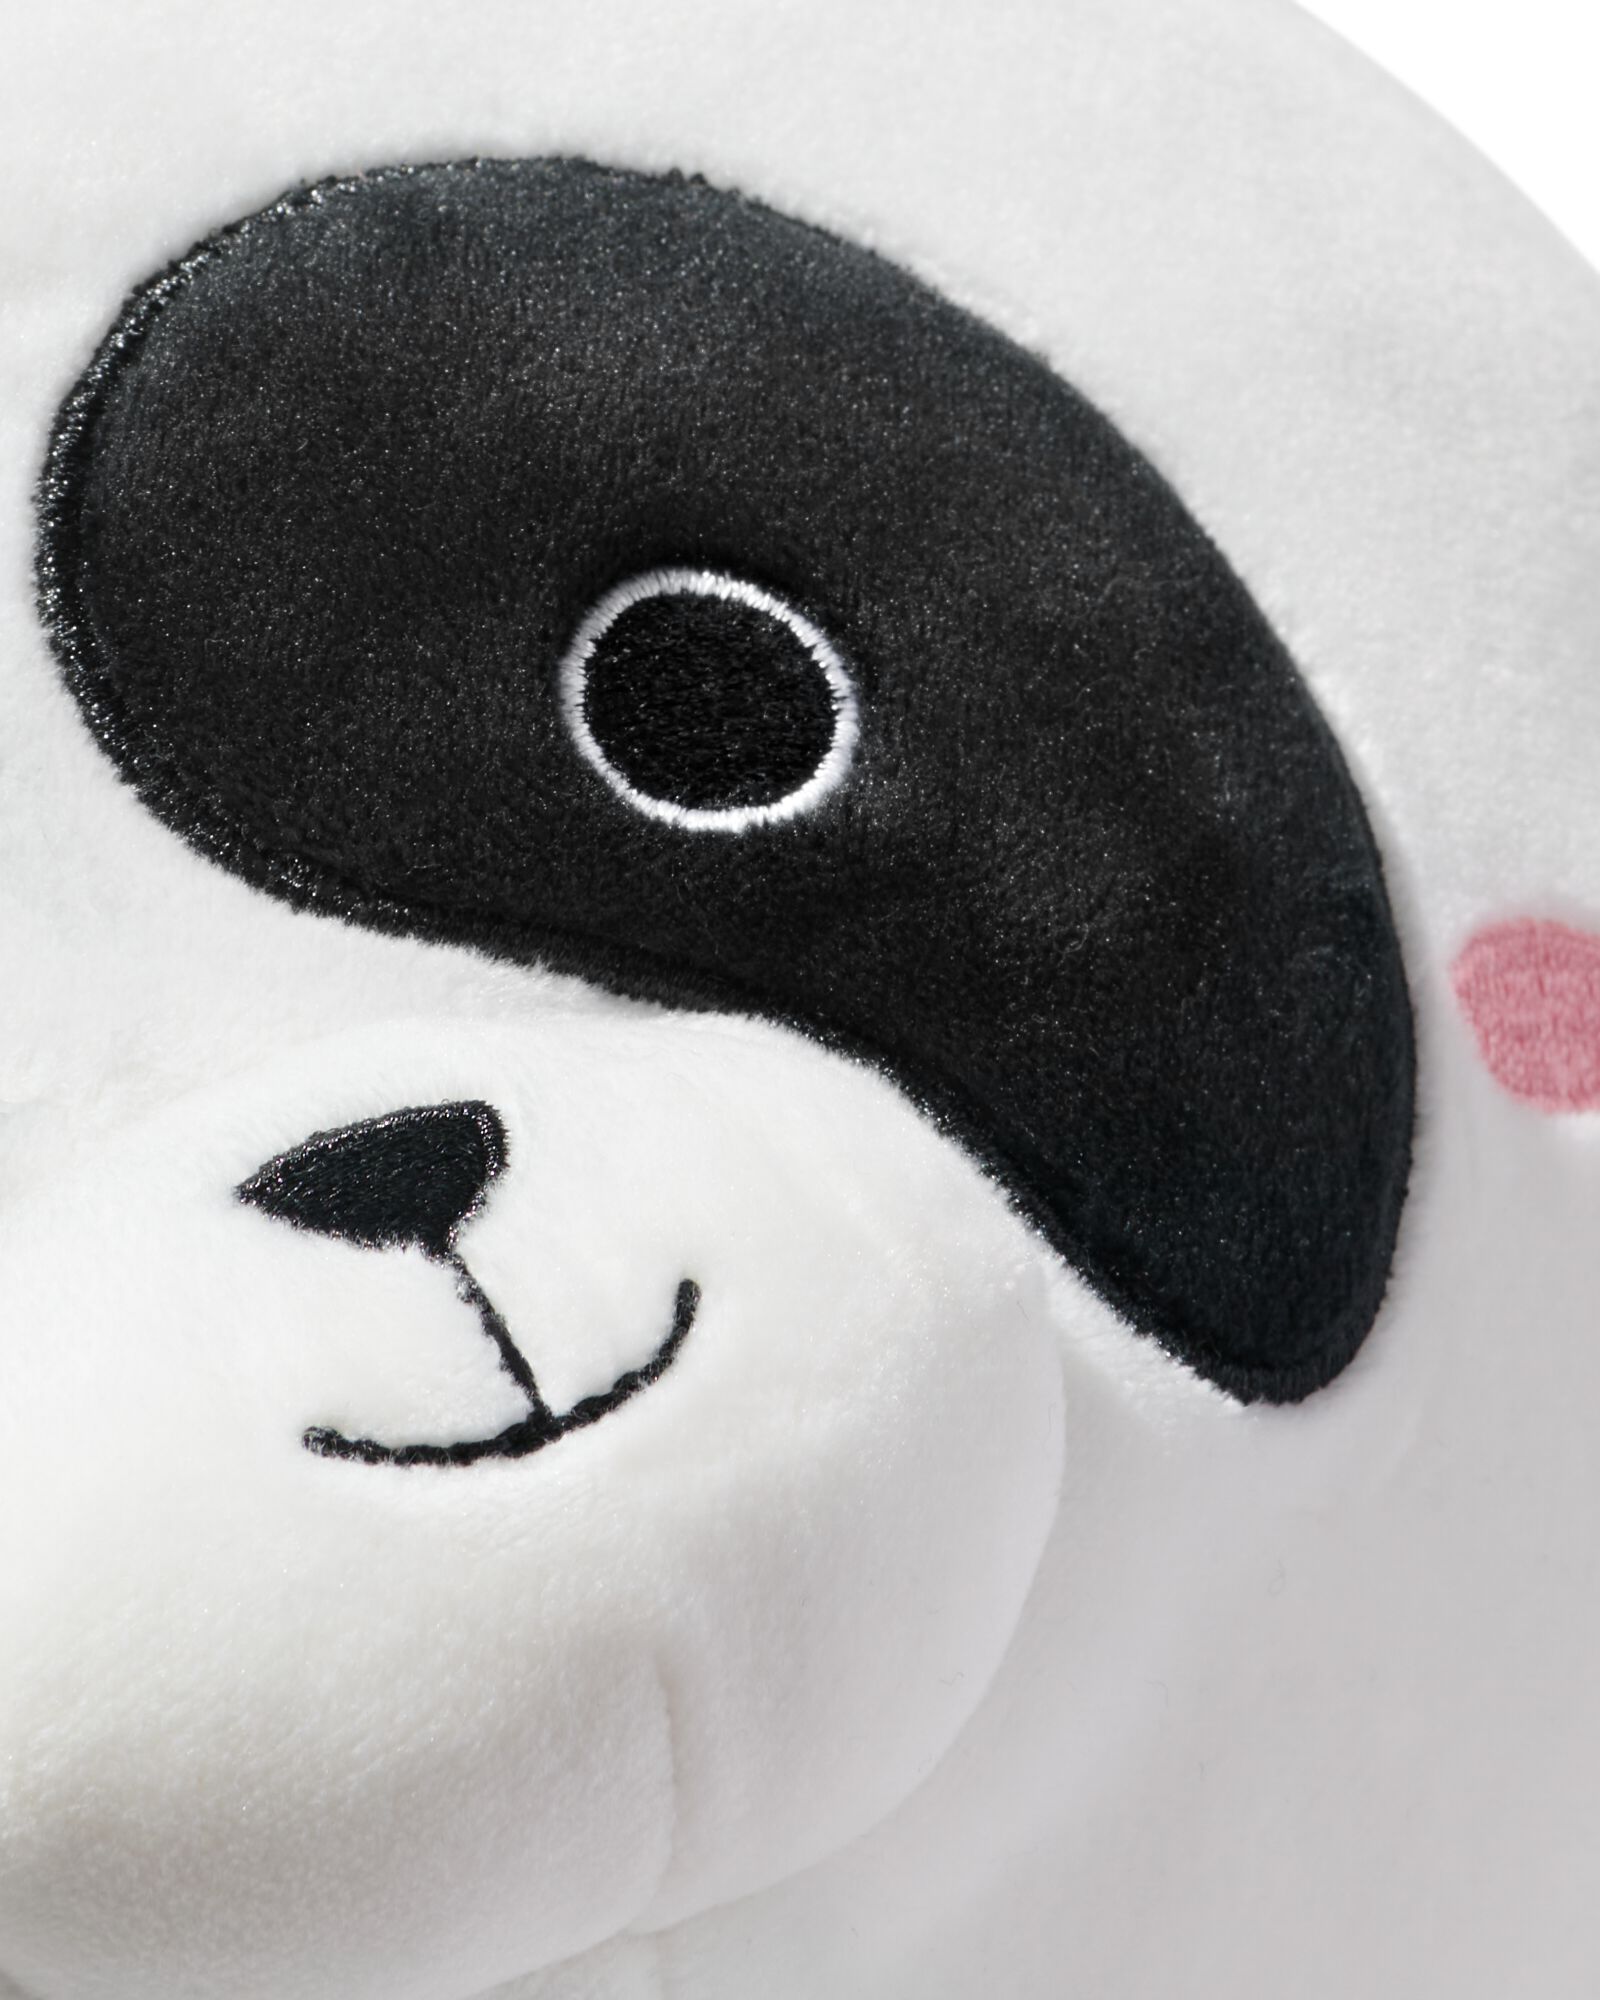 knuffel pluche panda - 61130204 - HEMA